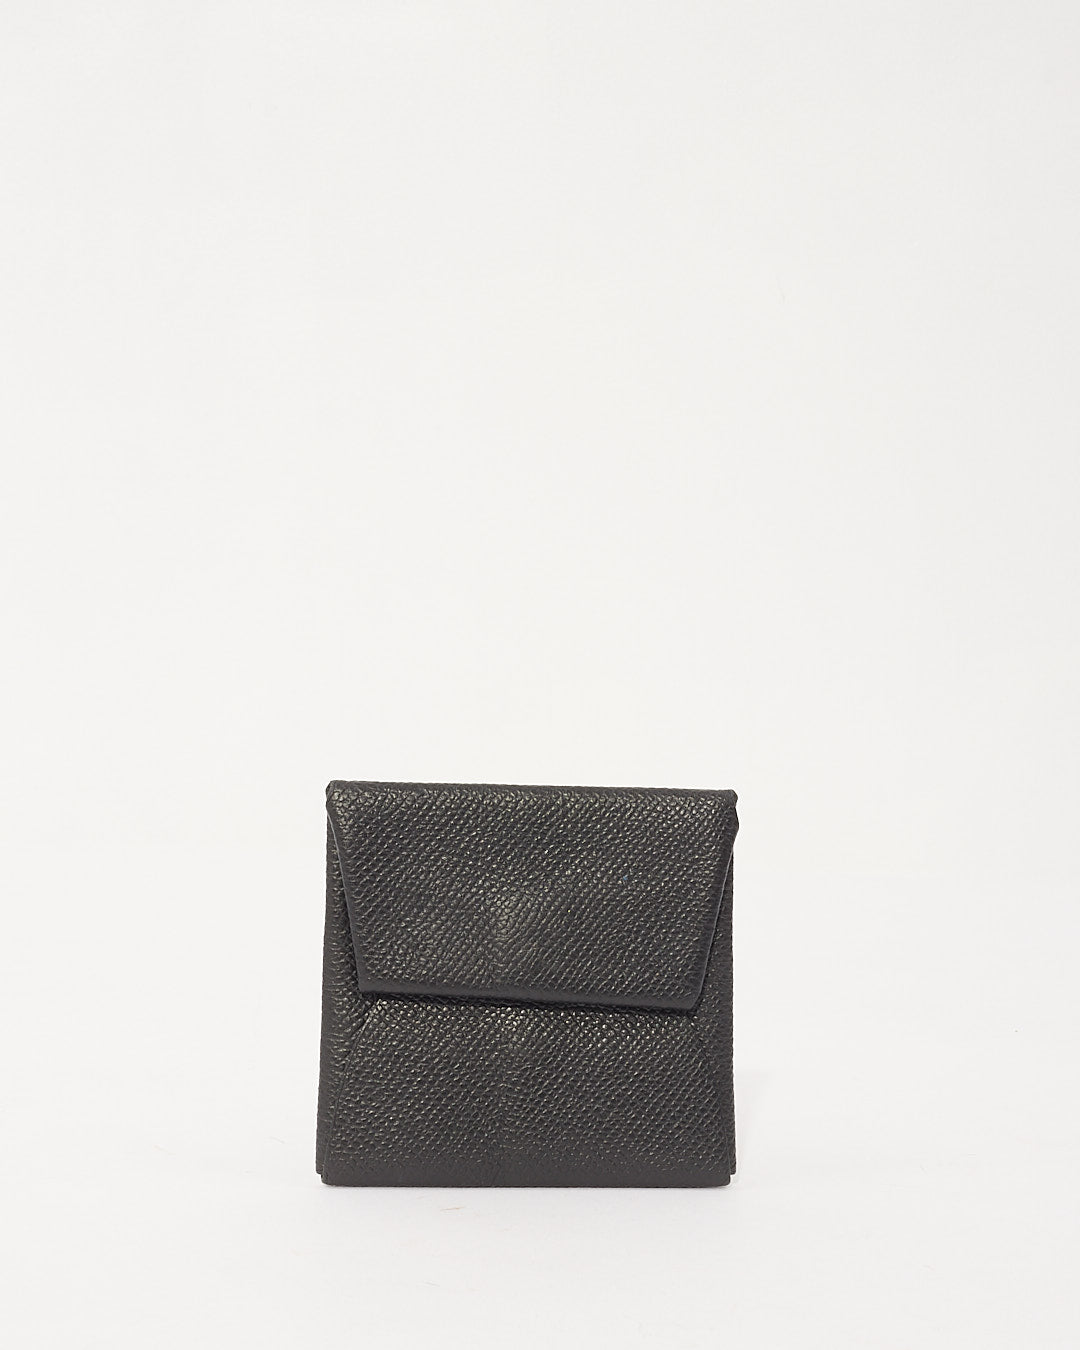 Hermès Porte-monnaie Bastia en cuir noir